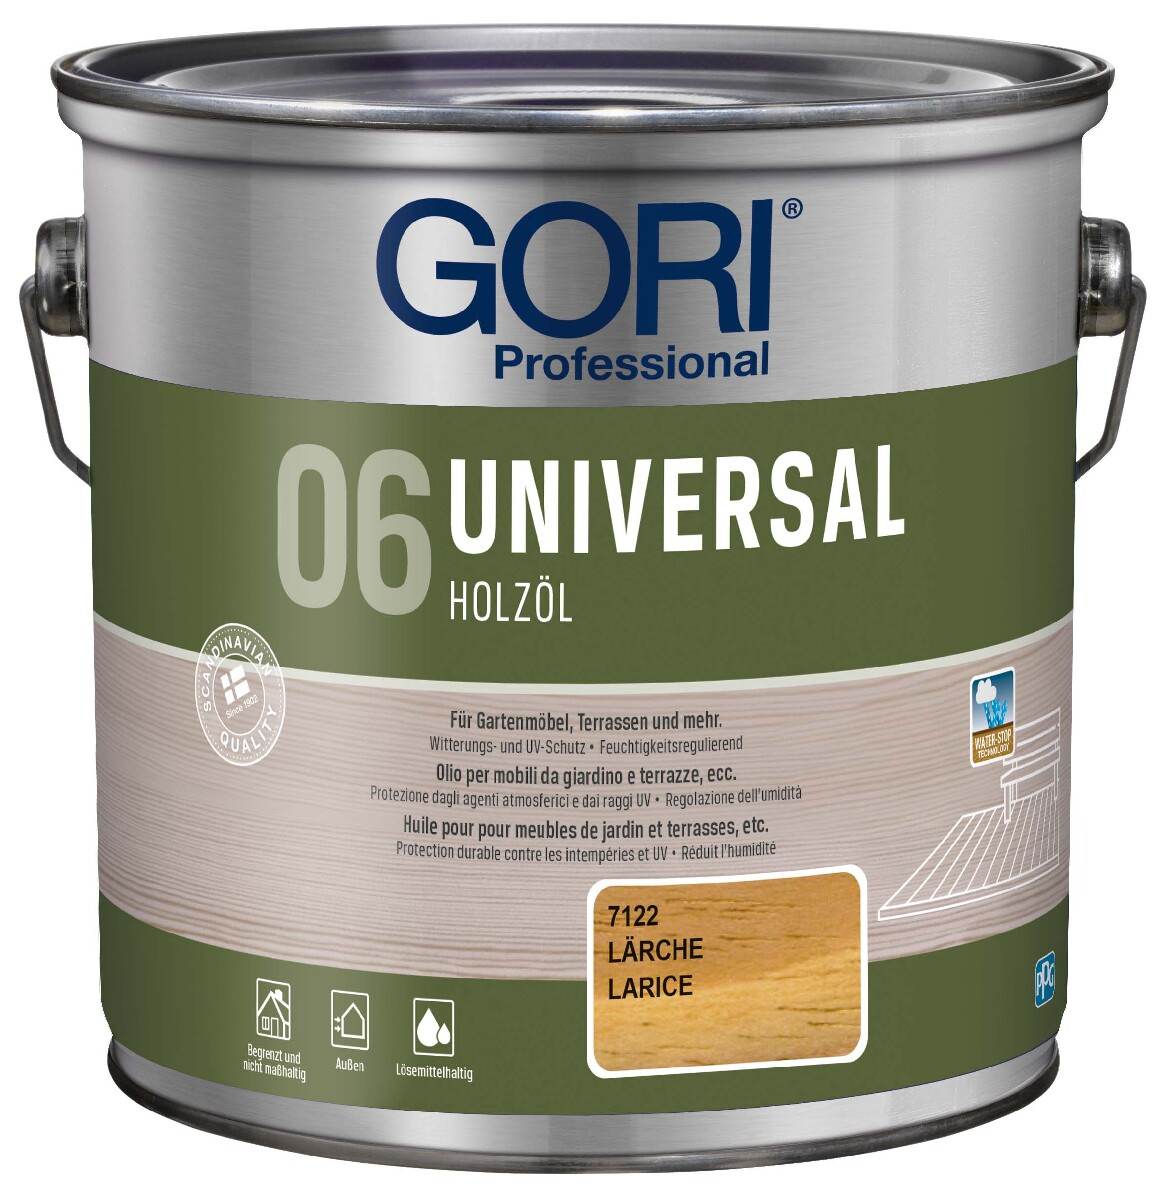 GORI 06 UNIVERSAL Holzöl 2,5 L in Lärche, Holzpflegeöl für Außen mit Wasser-Abperleffekt und UV-Schutz